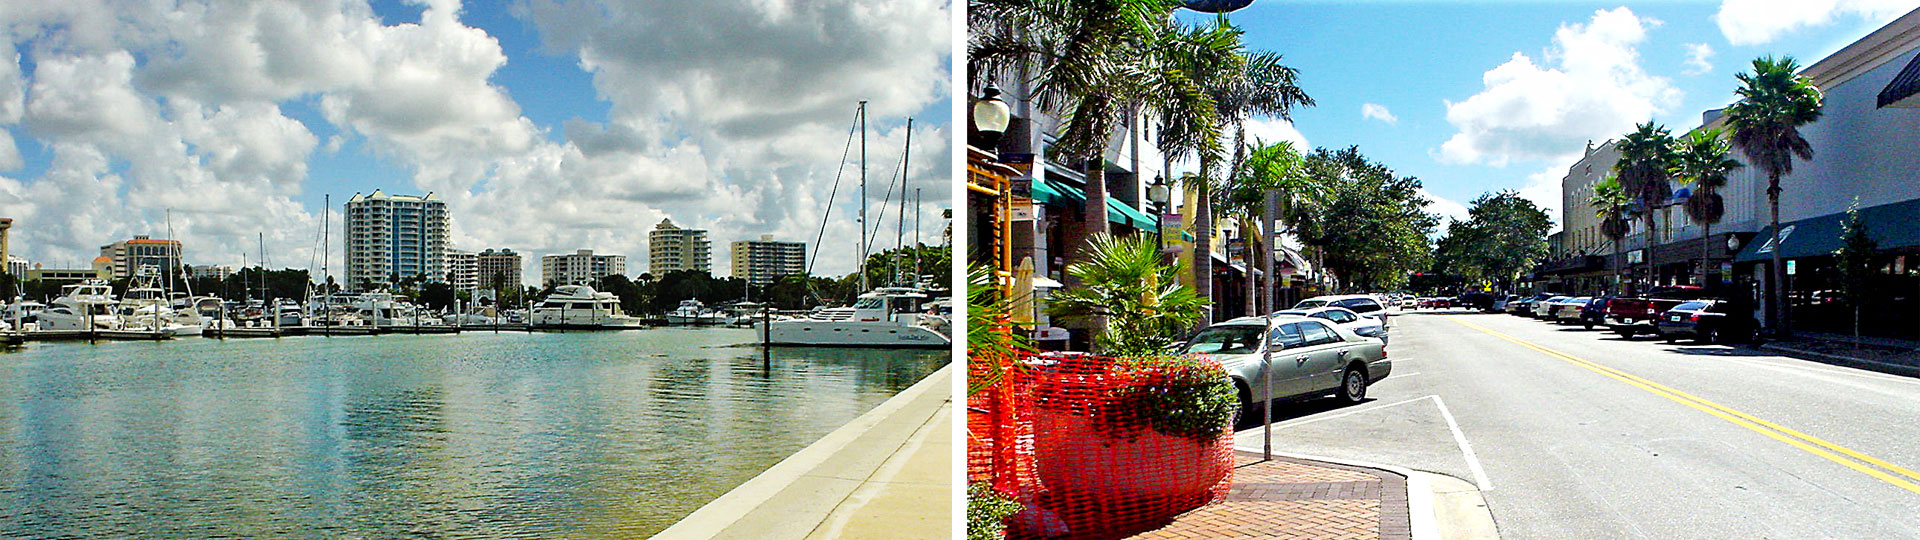 Marina Jack and downtown Sarasota